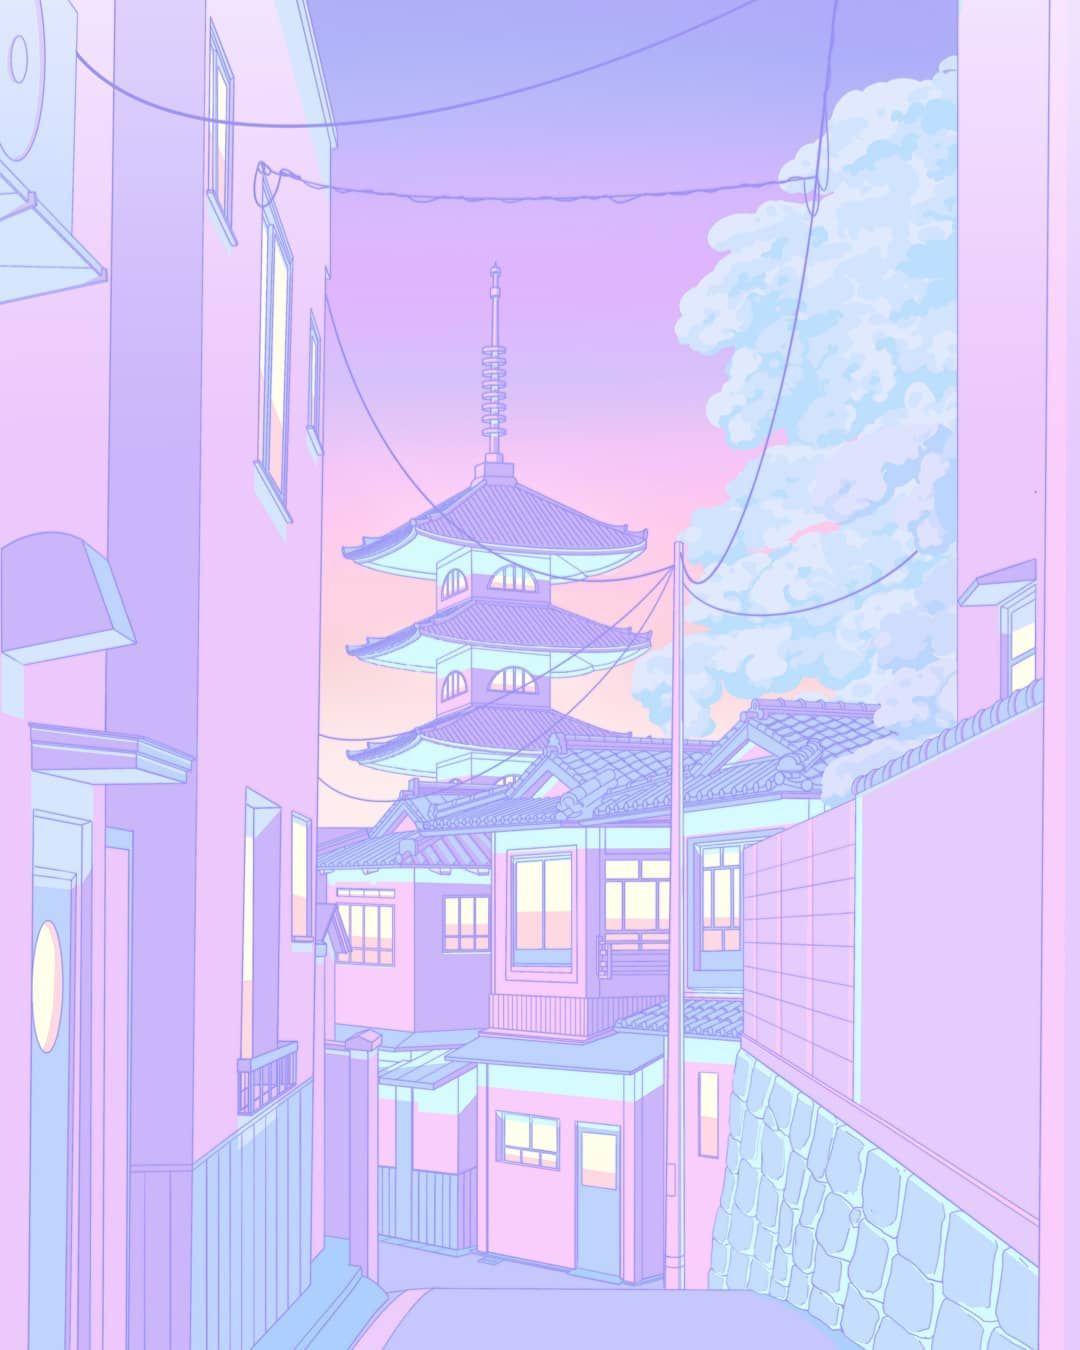 Chiêm ngưỡng tường màu tím Nhật Bản đang là trào lưu hot hiện nay. Màu tím mang đến sự tinh tế, quý phái cho ngôi nhà của bạn. Hãy cùng nhìn ngắm một góc nhìn đầy mới lạ và thưởng thức vẻ đẹp của tường màu tím Nhật Bản qua hình ảnh.